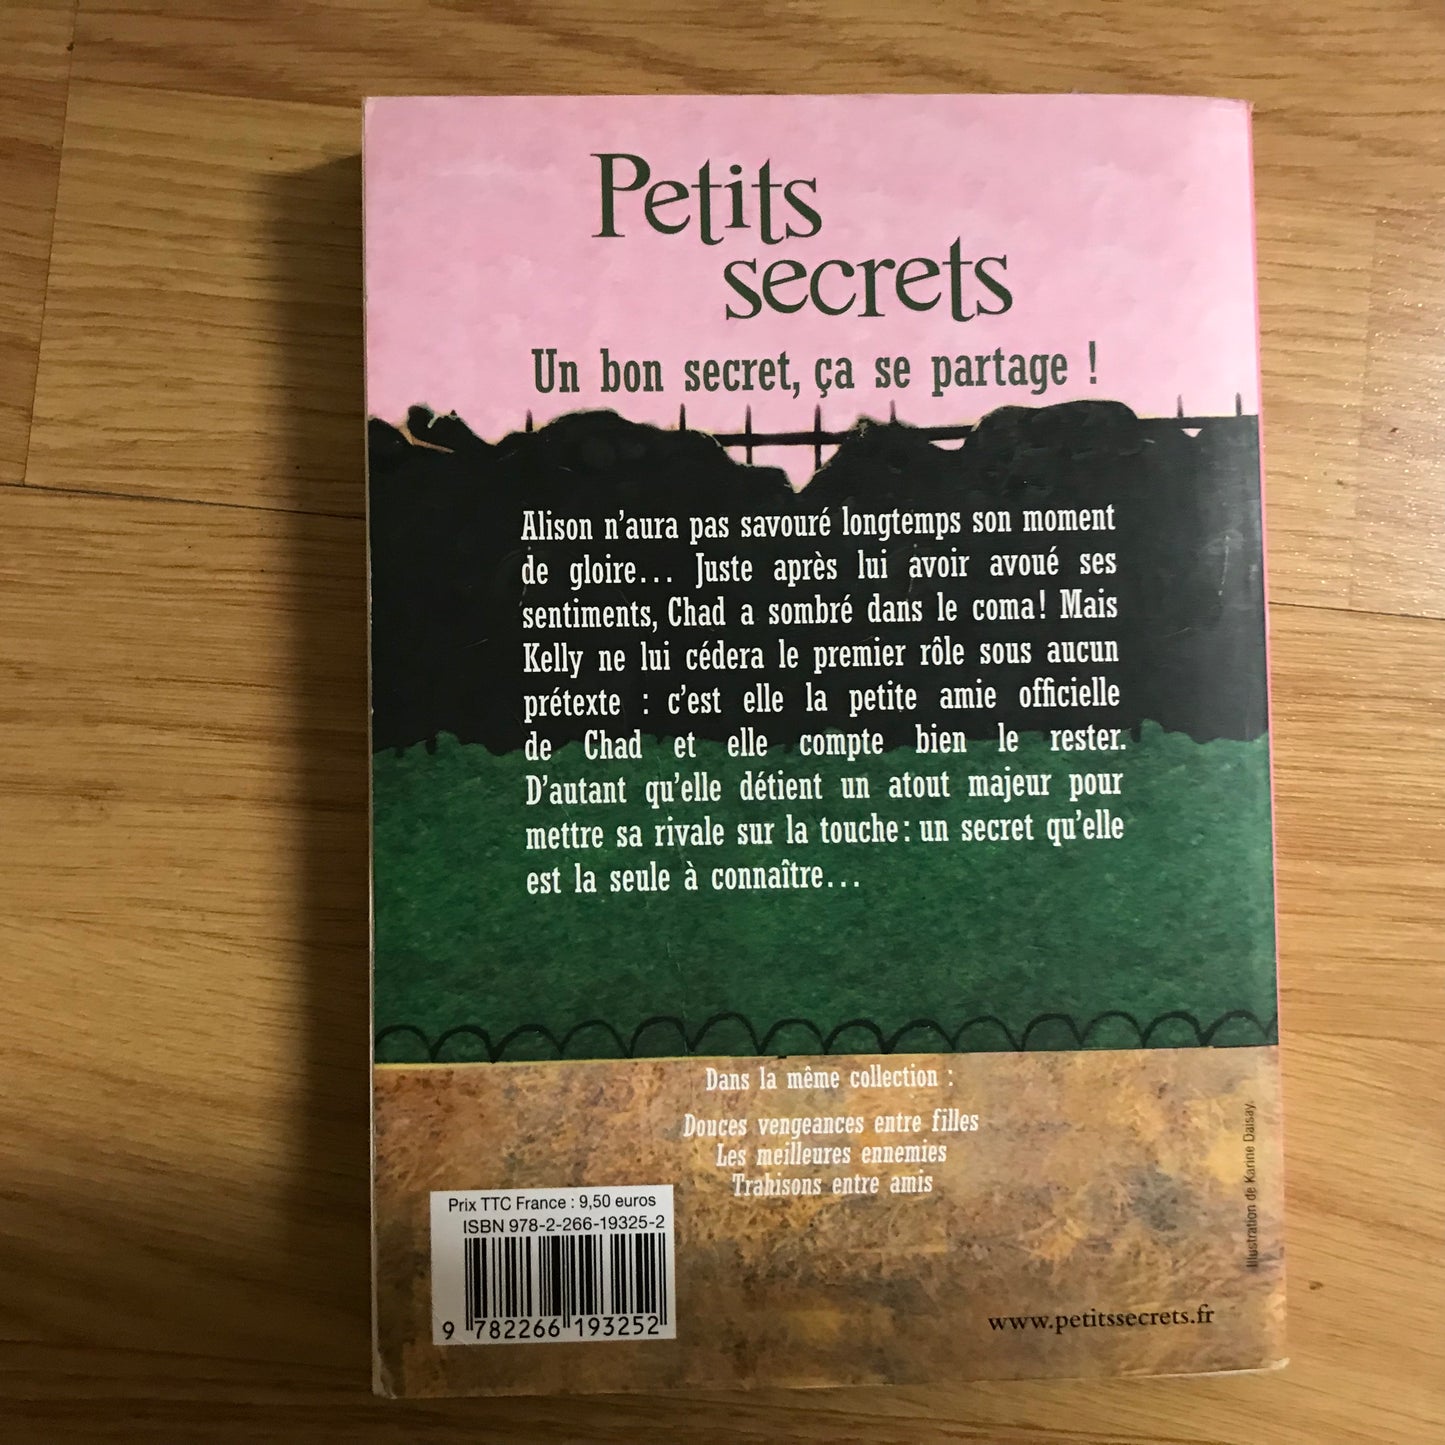 Petits secrets: A la vie, à la mort - Emily Blake